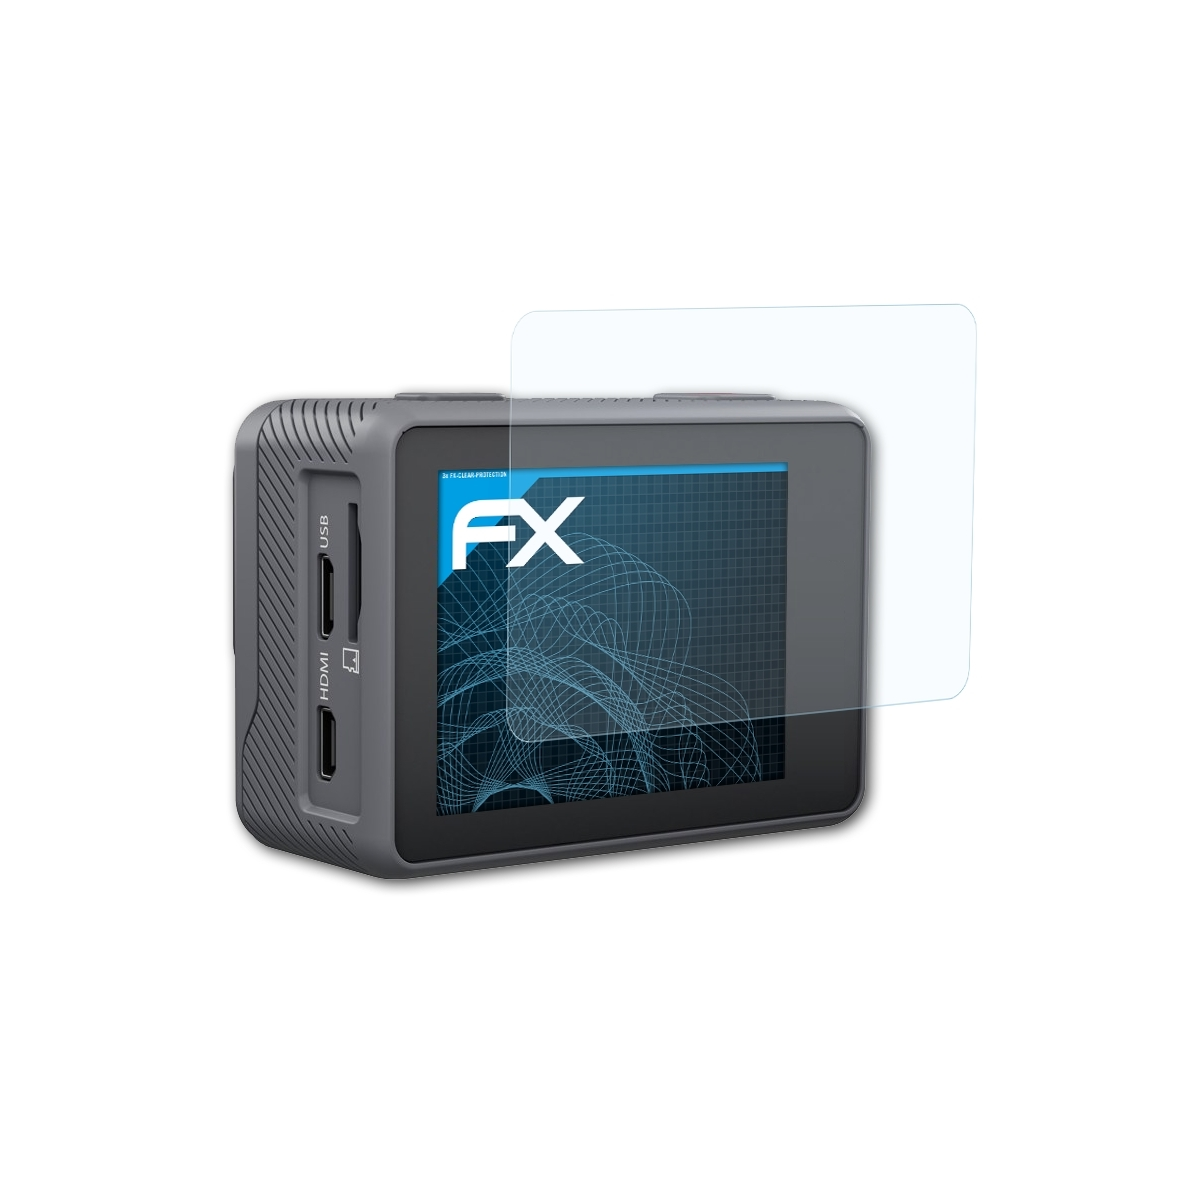 X10.1) Displayschutz(für 3x Lamax ATFOLIX FX-Clear